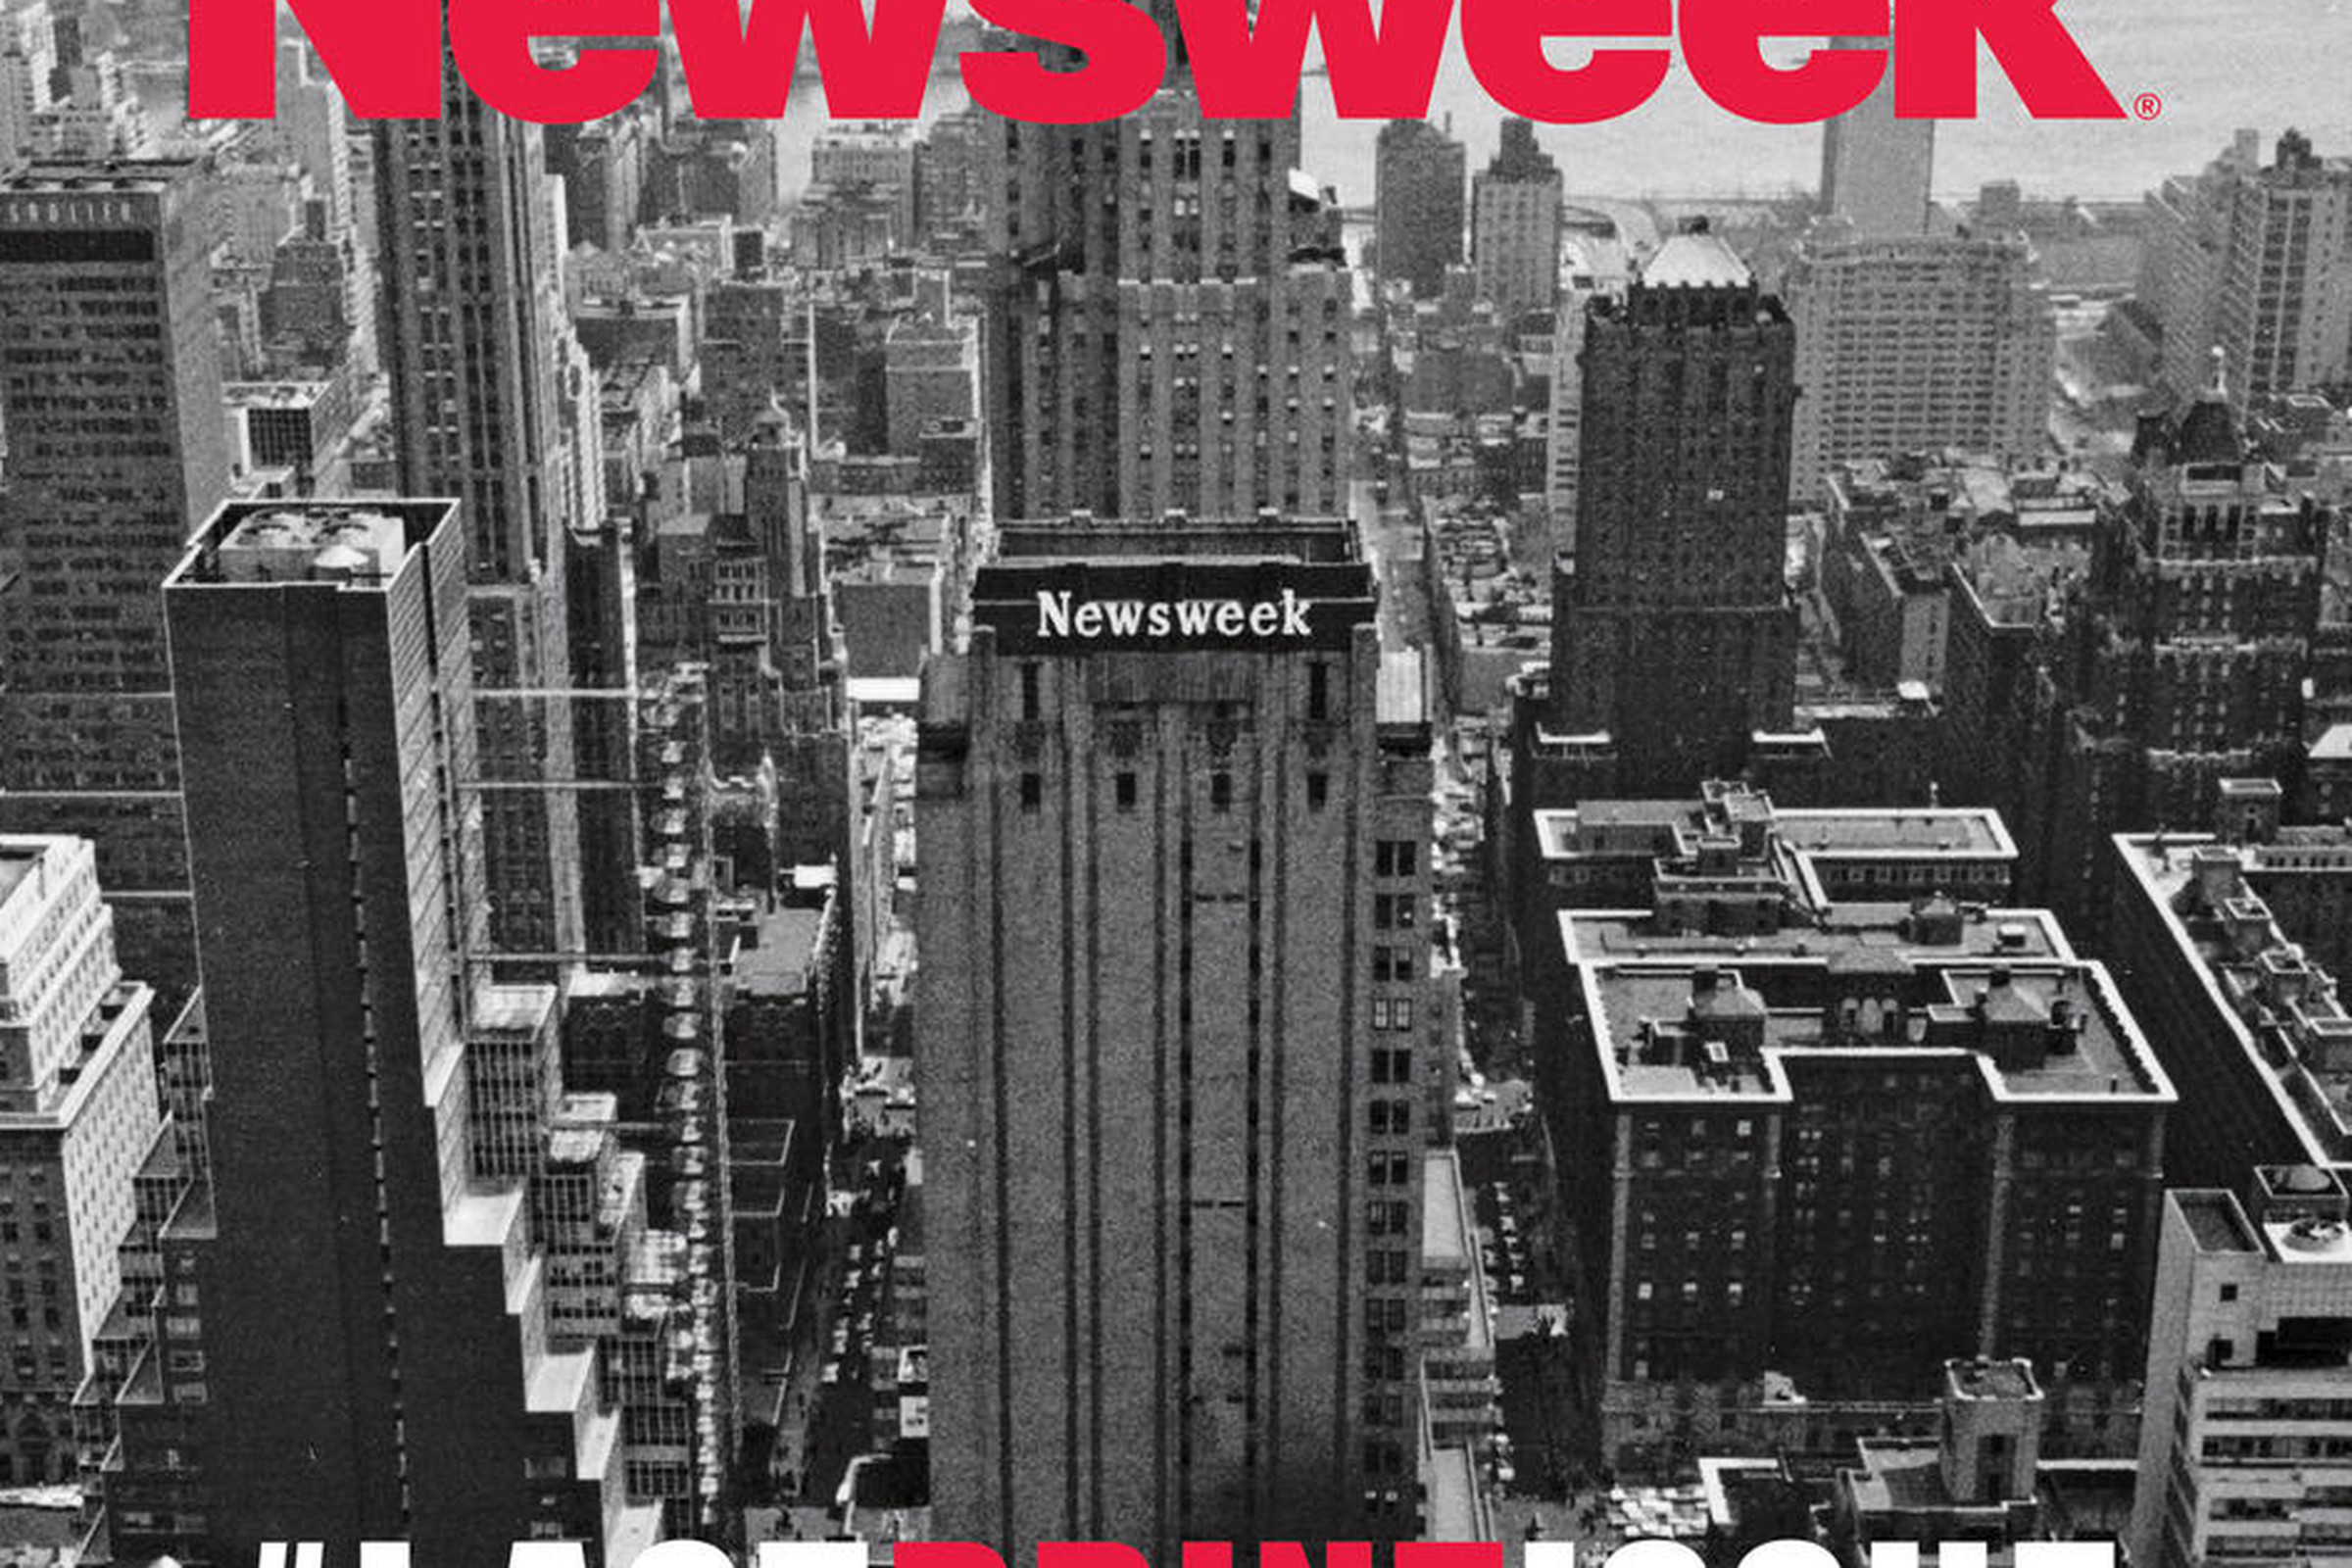 Newsweek Final Cover